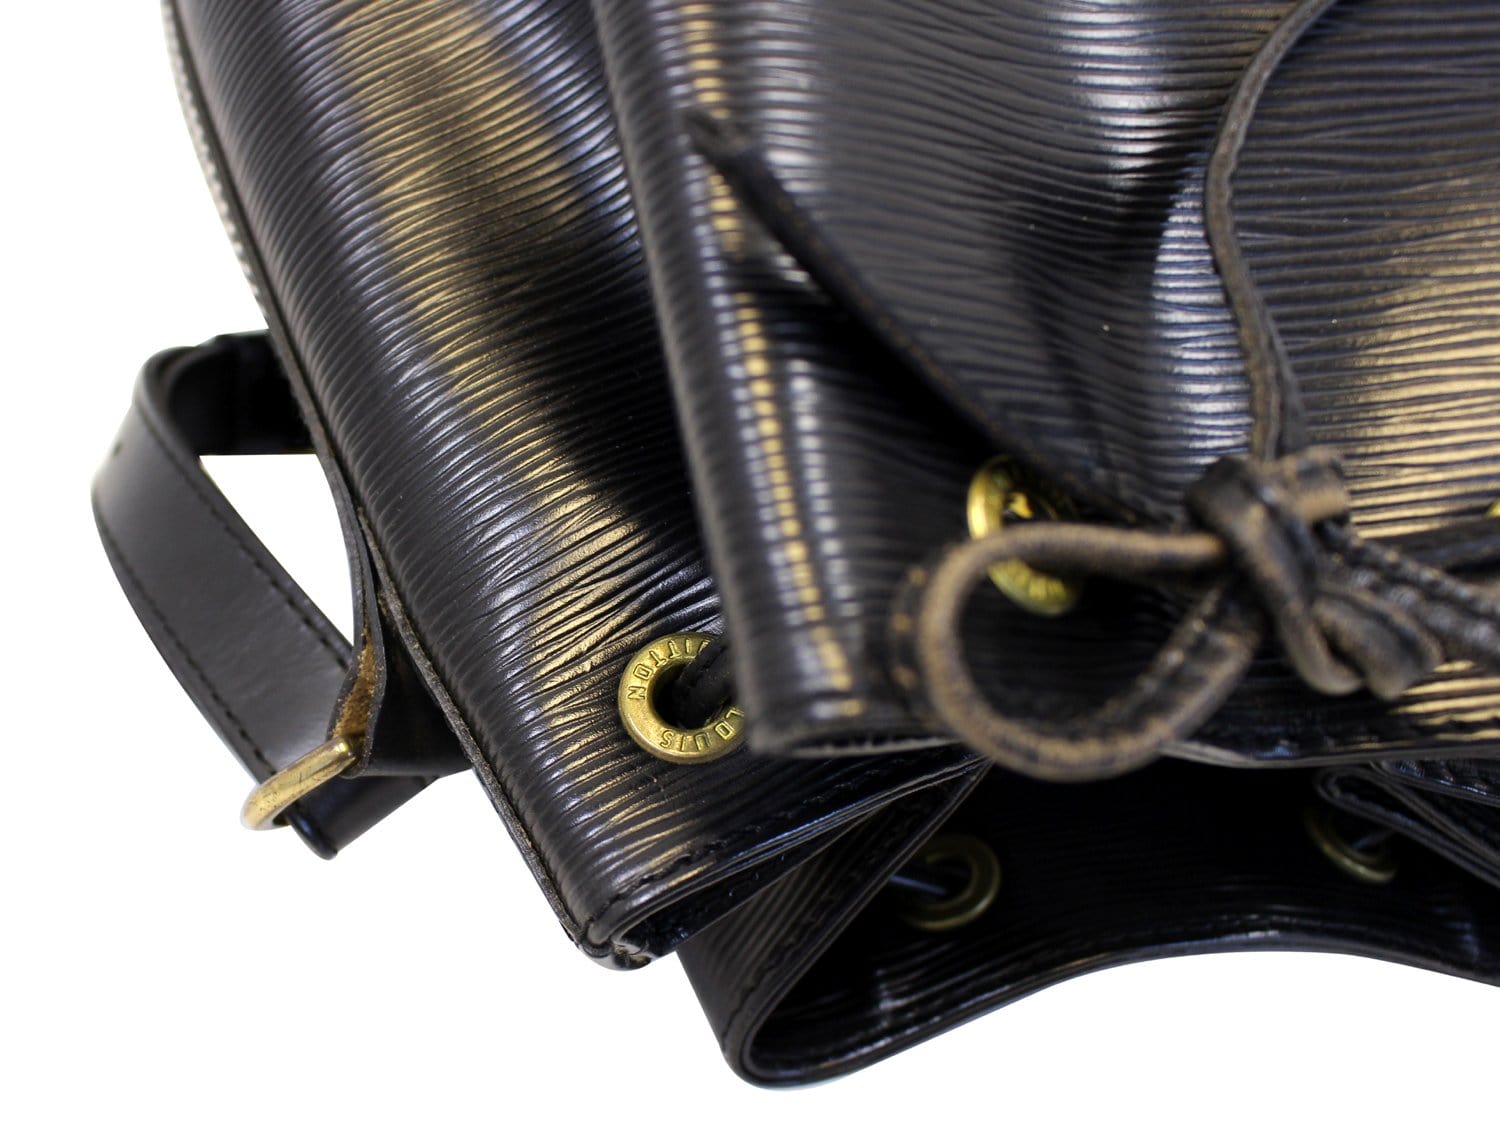 Lot - LOUIS VUITTON Mini sac cabas Louis Vuitton en cuir épi noir